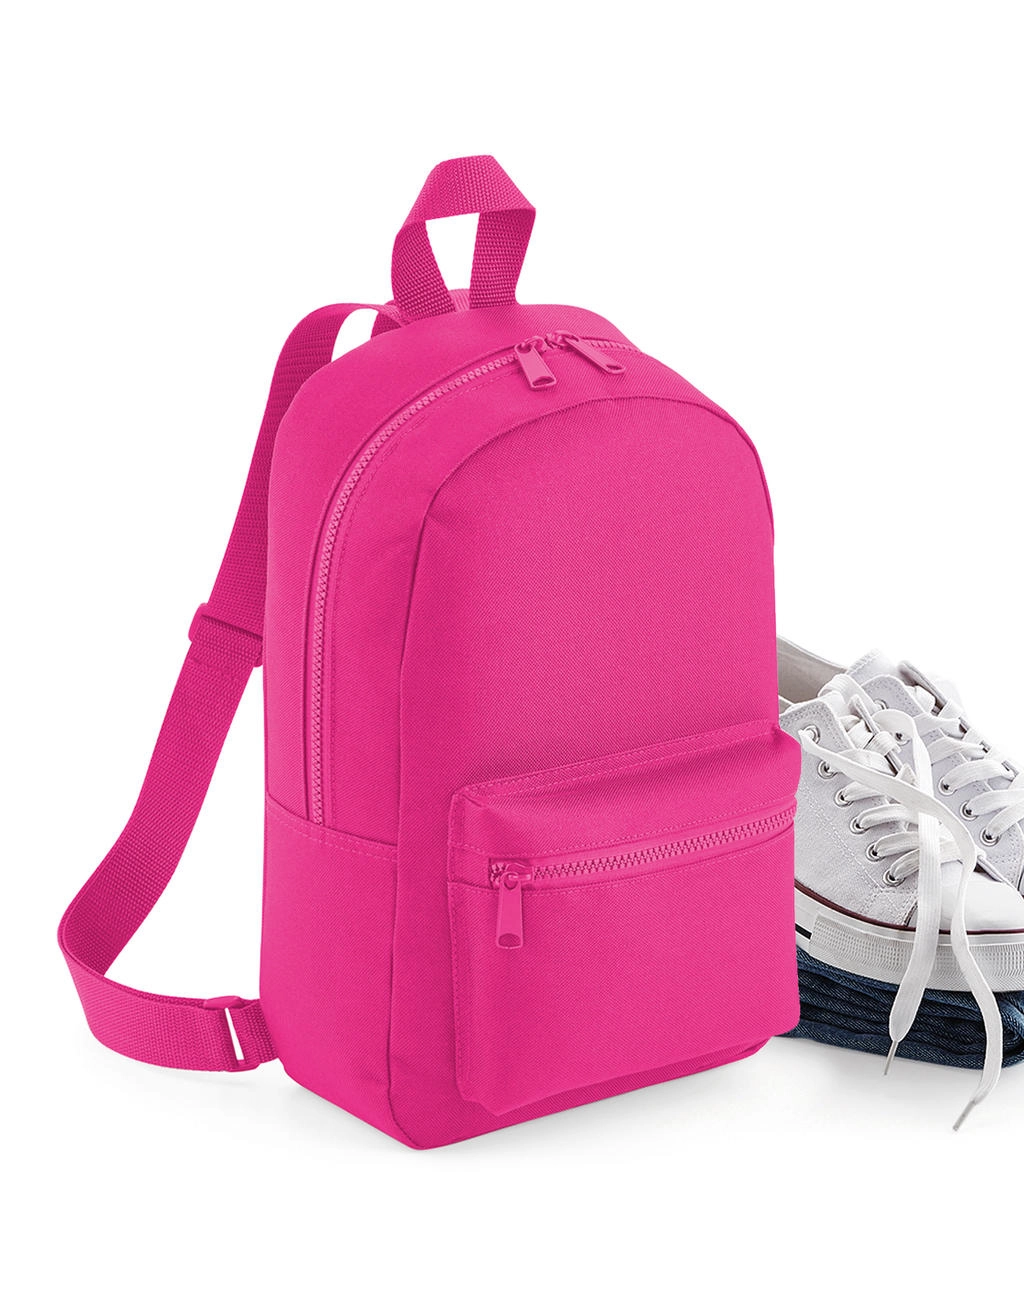 Mini Essential Fashion Backpack zum Besticken und Bedrucken mit Ihren Logo, Schriftzug oder Motiv.